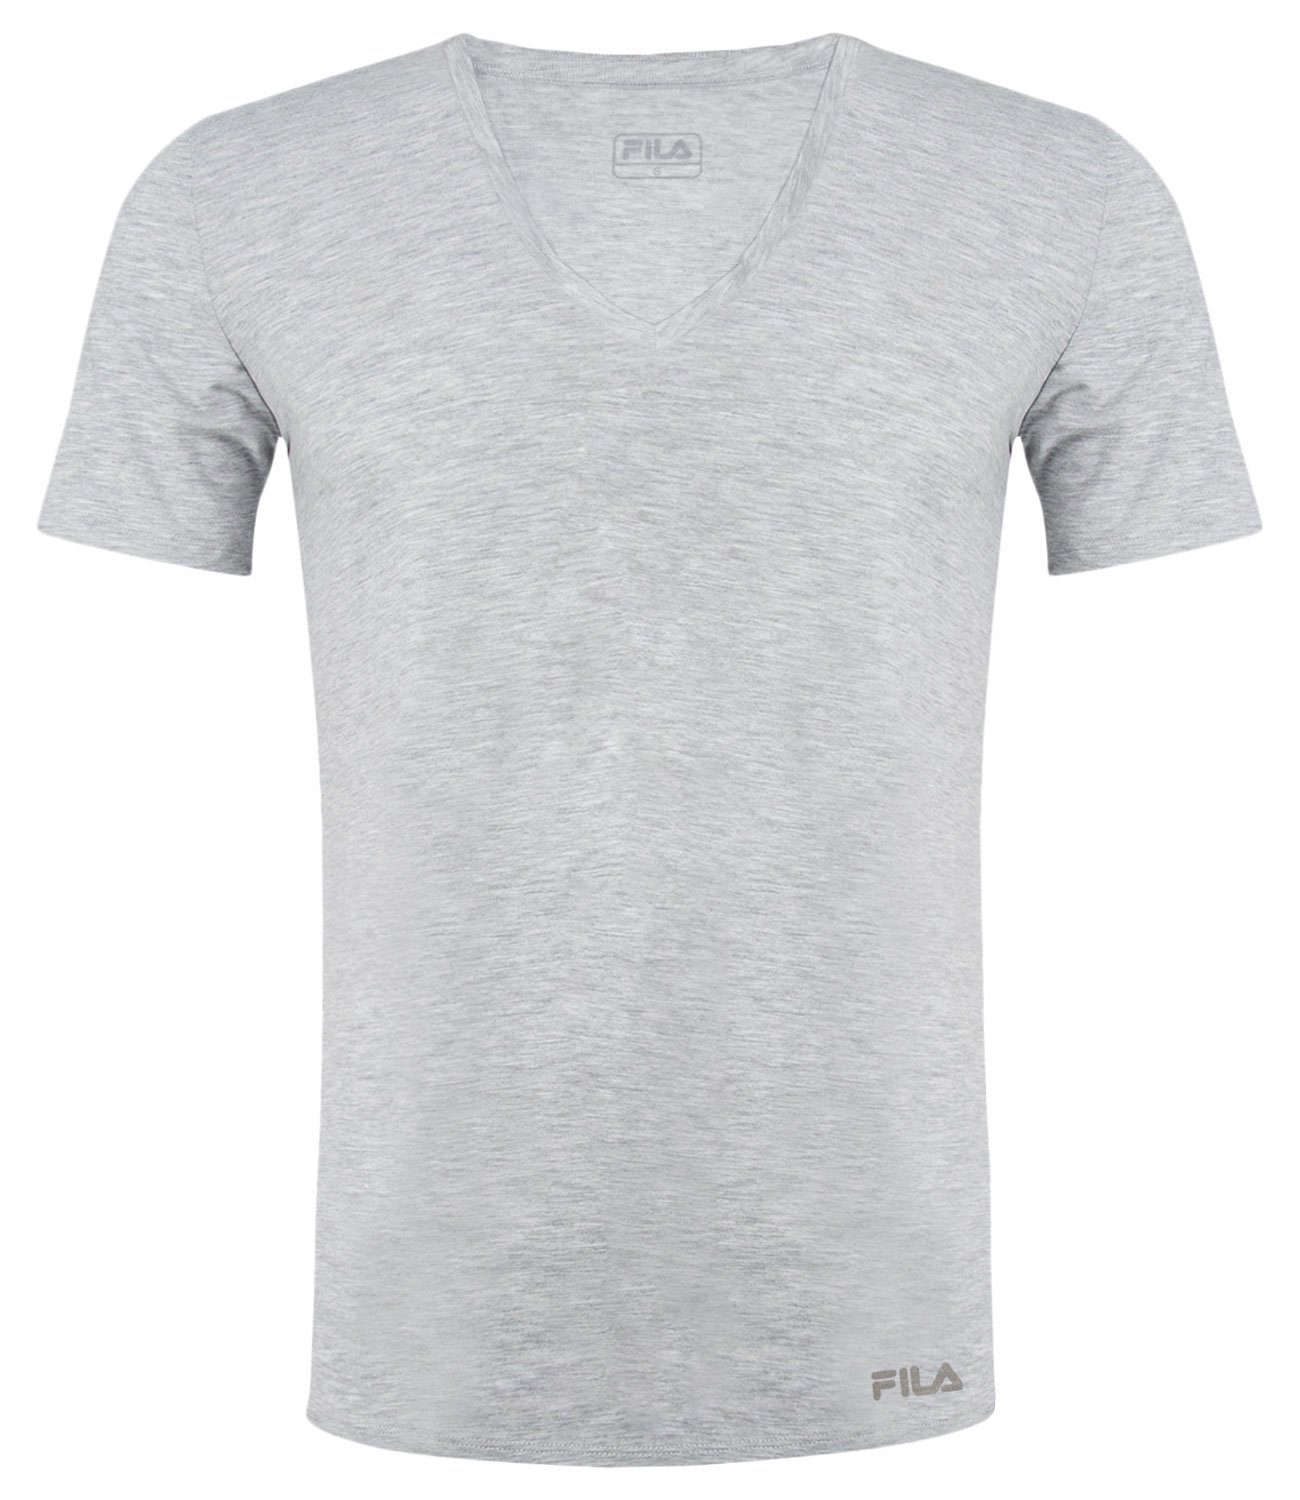 400 Baumwolljersey T-Shirt V-Neck grey aus weichem Fila